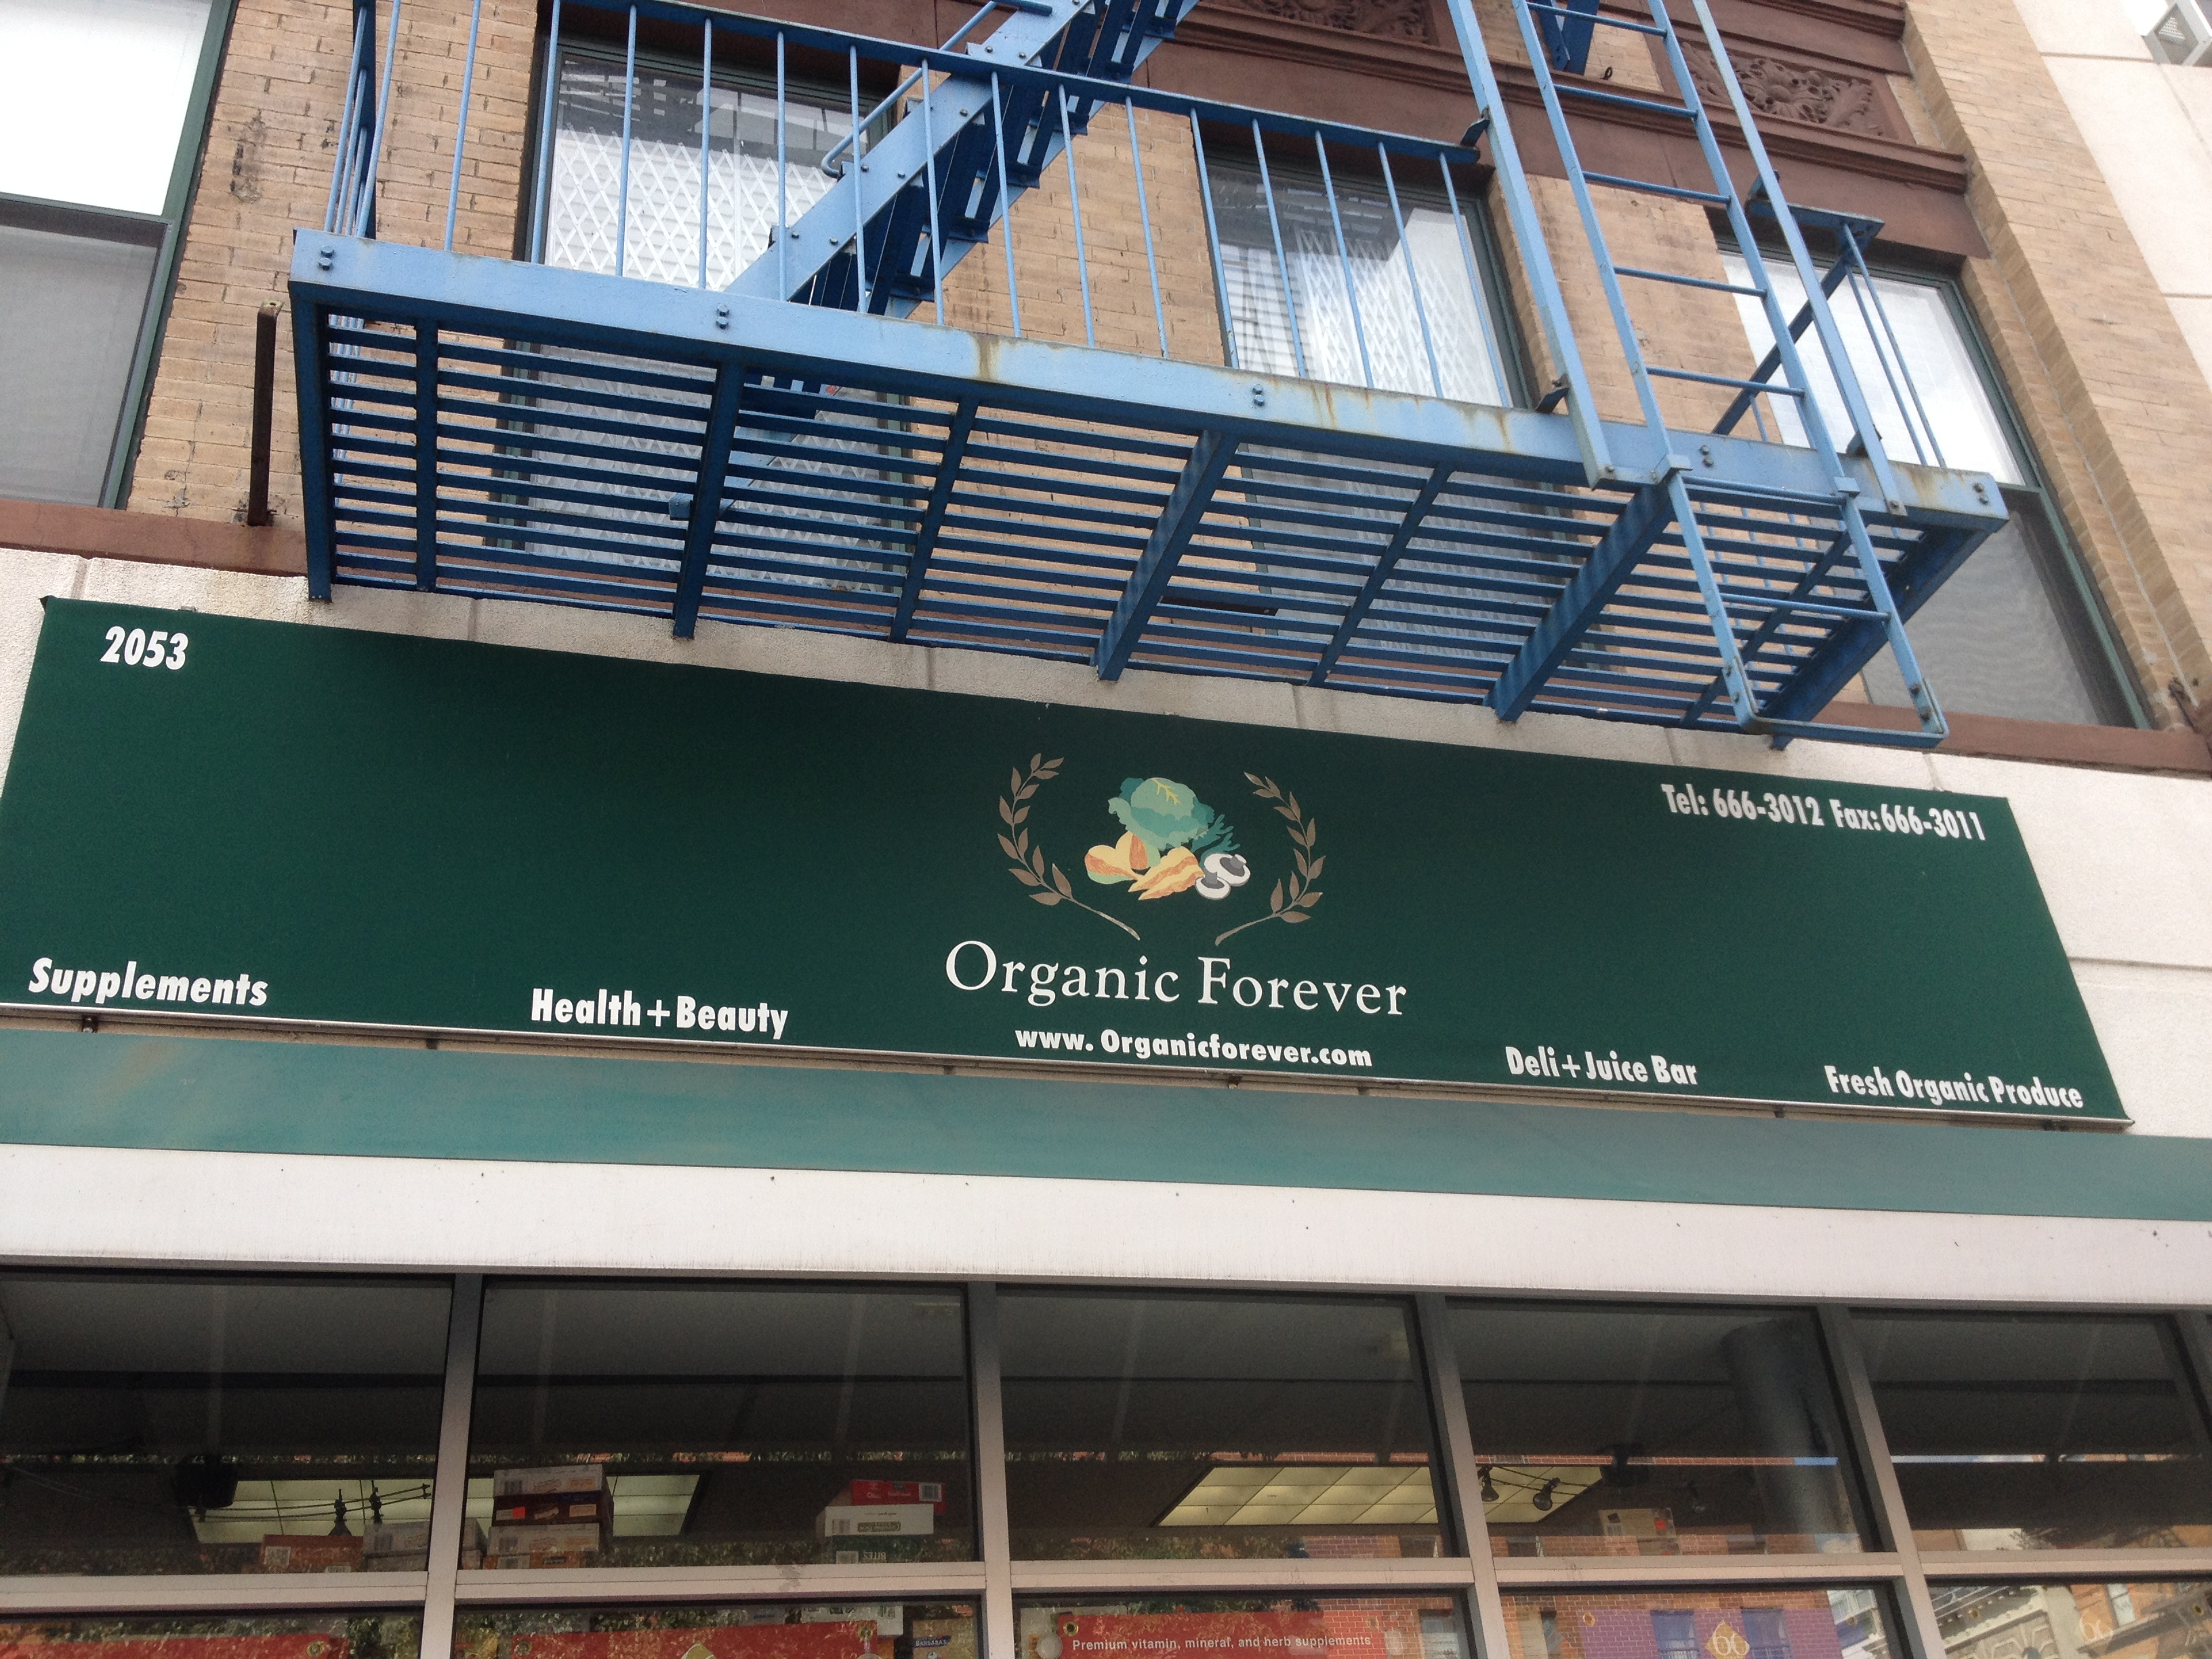 Organic Forever in Harlem